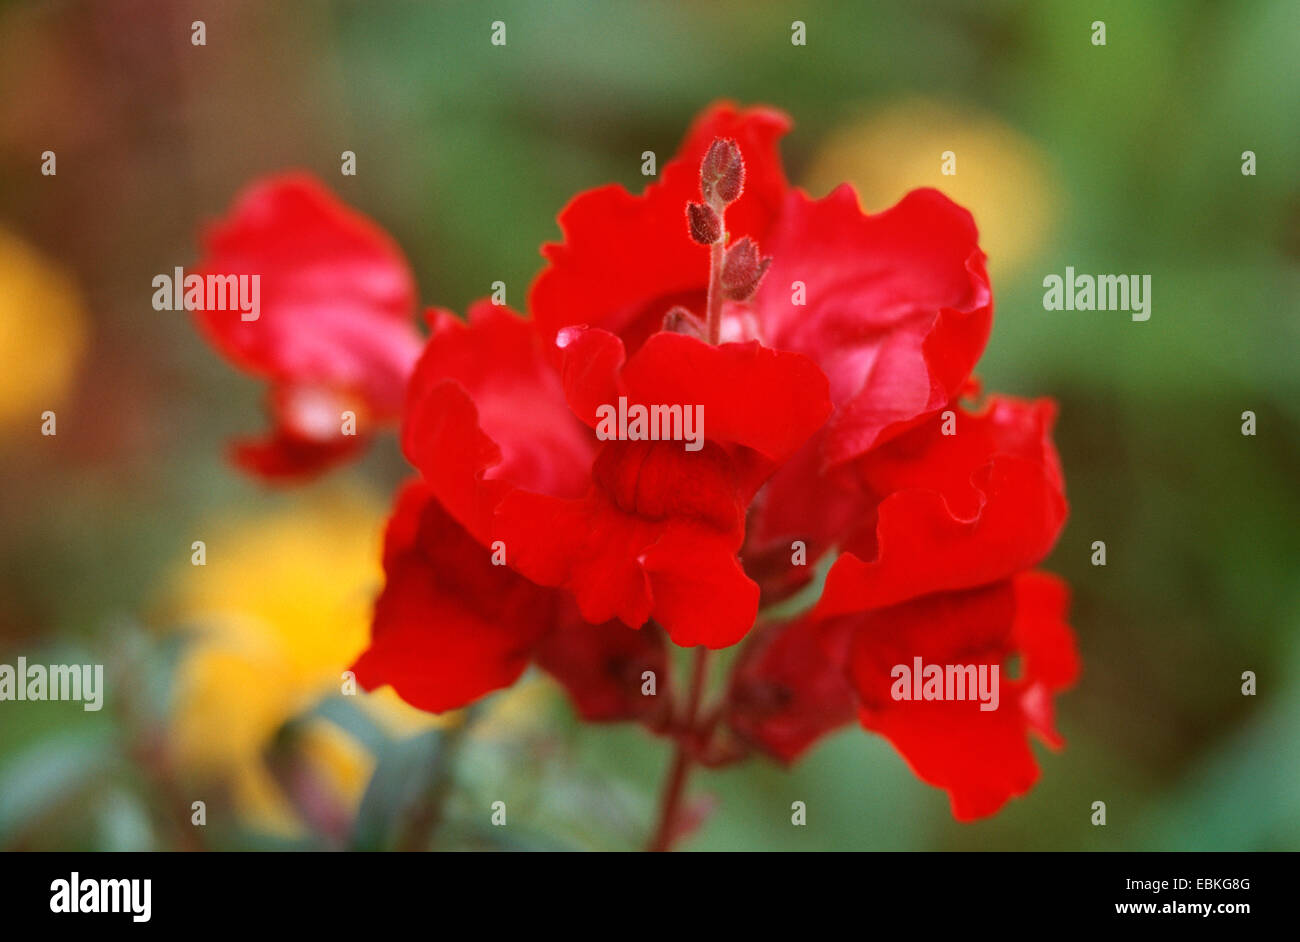 garden snapdragon (Antirrhinum majus 'Rocket Samtrot', Antirrhinum majus Rocket Samtrot), blooming Stock Photo